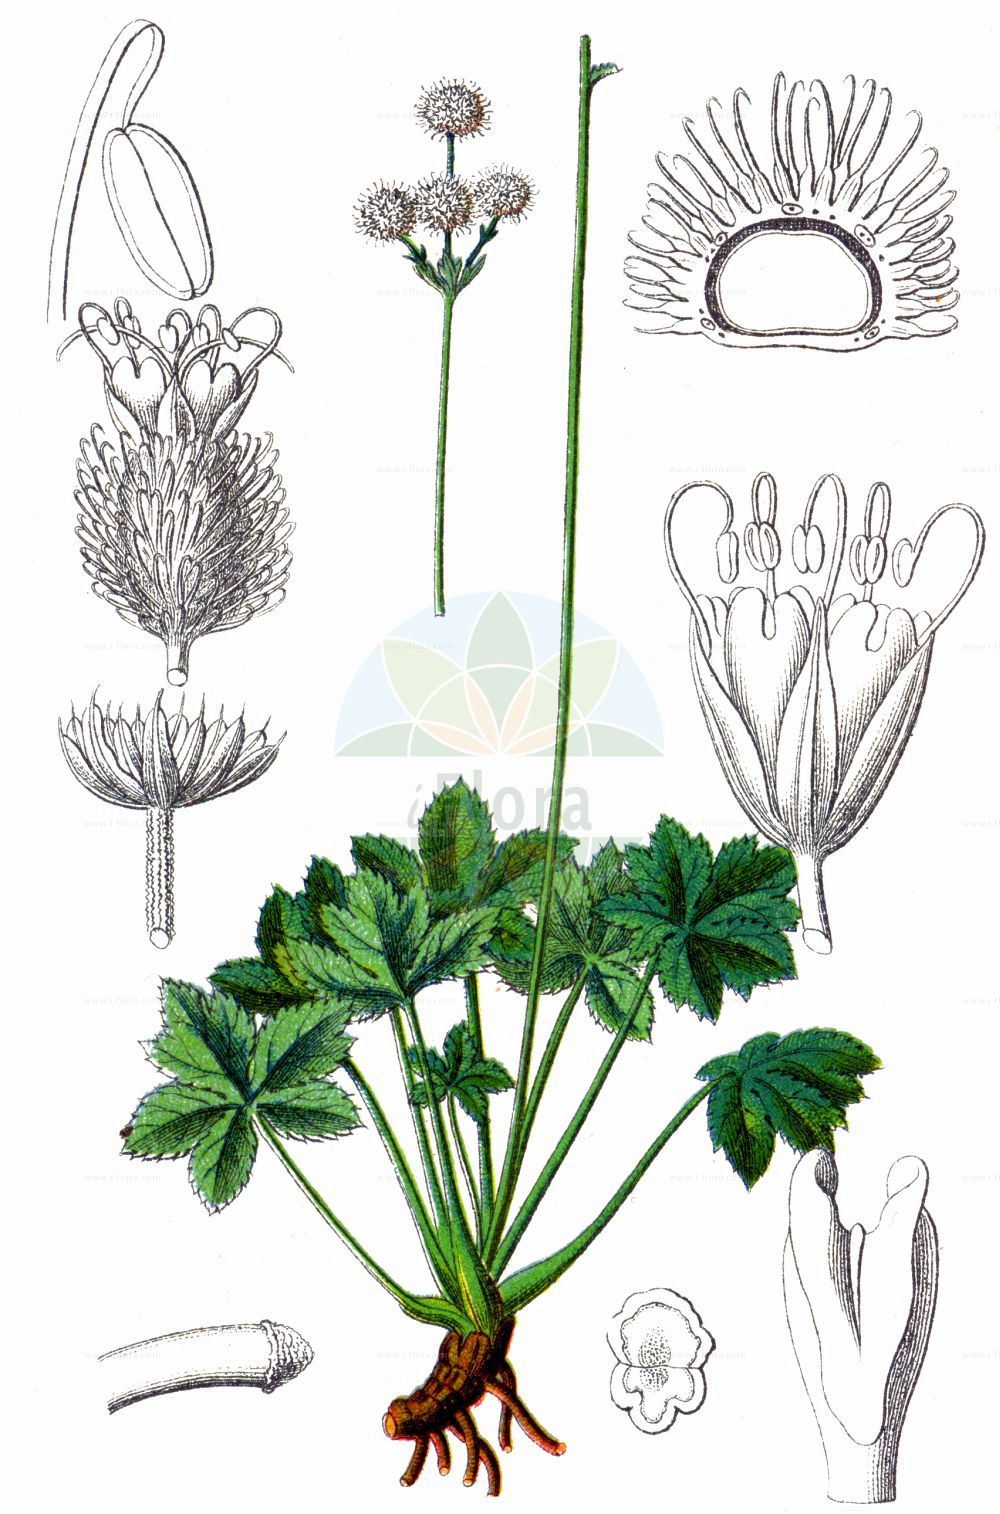 Historische Abbildung von Sanicula europaea (Wald-Sanikel - Sanicle). Das Bild zeigt Blatt, Bluete, Frucht und Same. ---- Historical Drawing of Sanicula europaea (Wald-Sanikel - Sanicle). The image is showing leaf, flower, fruit and seed.(Sanicula europaea,Wald-Sanikel,Sanicle,Sanicula europaea,Wald-Sanikel,Heildolde,Sanikel,Sanicle,Common Sanicle,Sanicula,Sanikel,Sanicle,Apiaceae,Doldengewächse,Carrot family,Blatt,Bluete,Frucht,Same,leaf,flower,fruit,seed,Sturm (1796f))